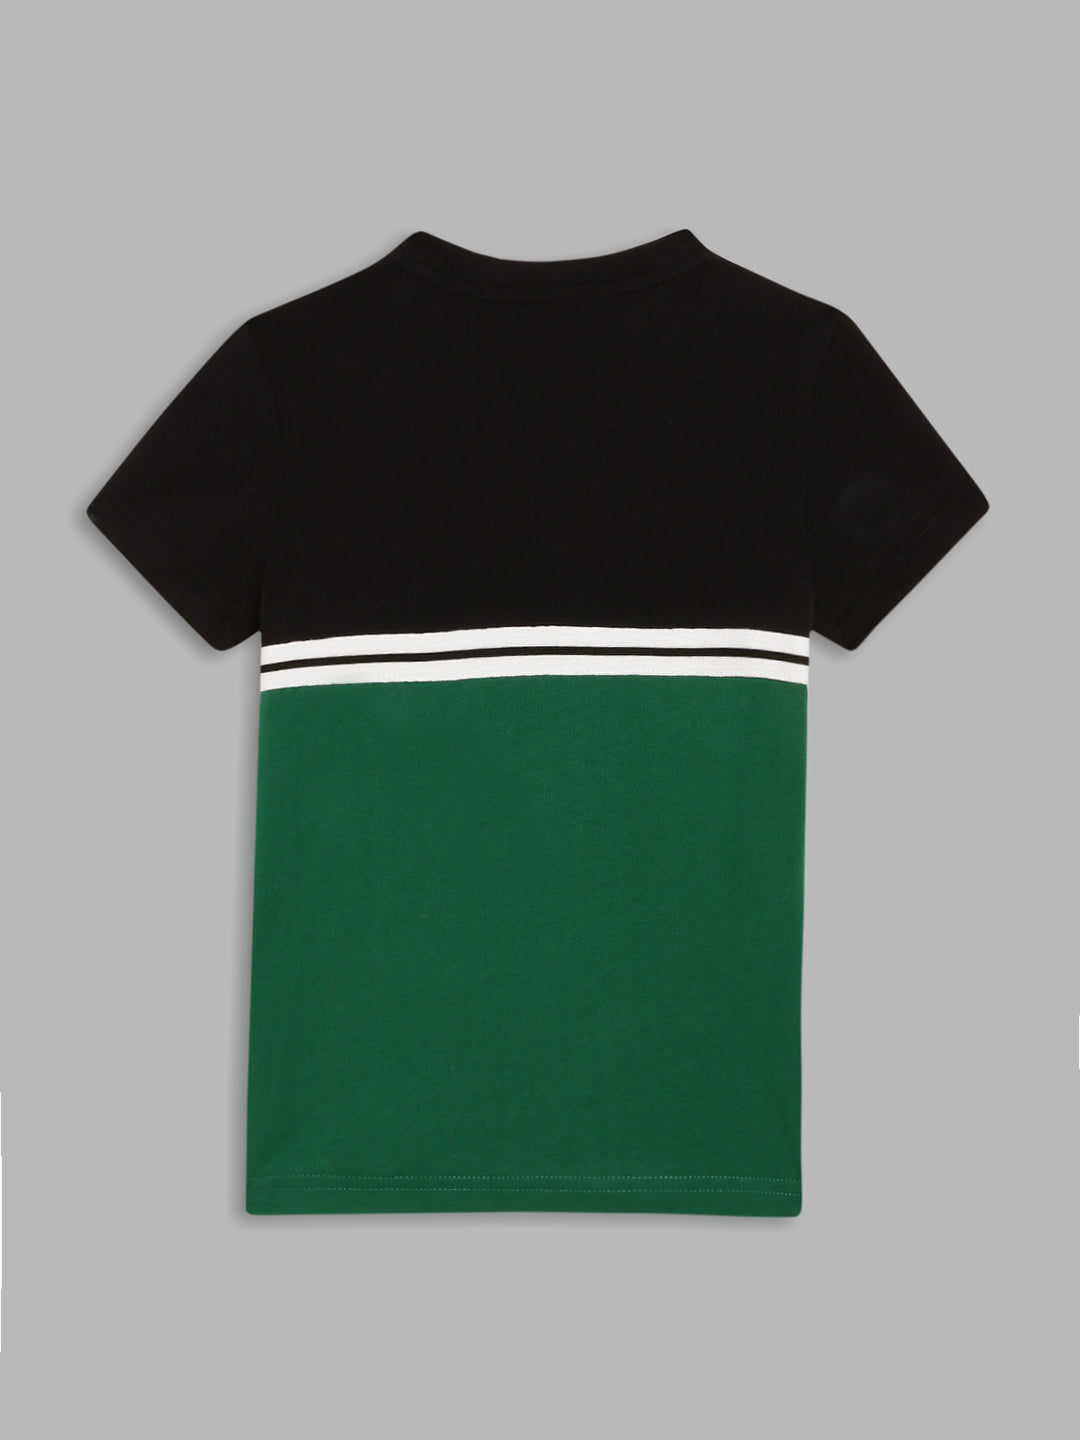 Antony Morato Boys Navy Blue  Green Colourblocked Pure Cotton T-shirt